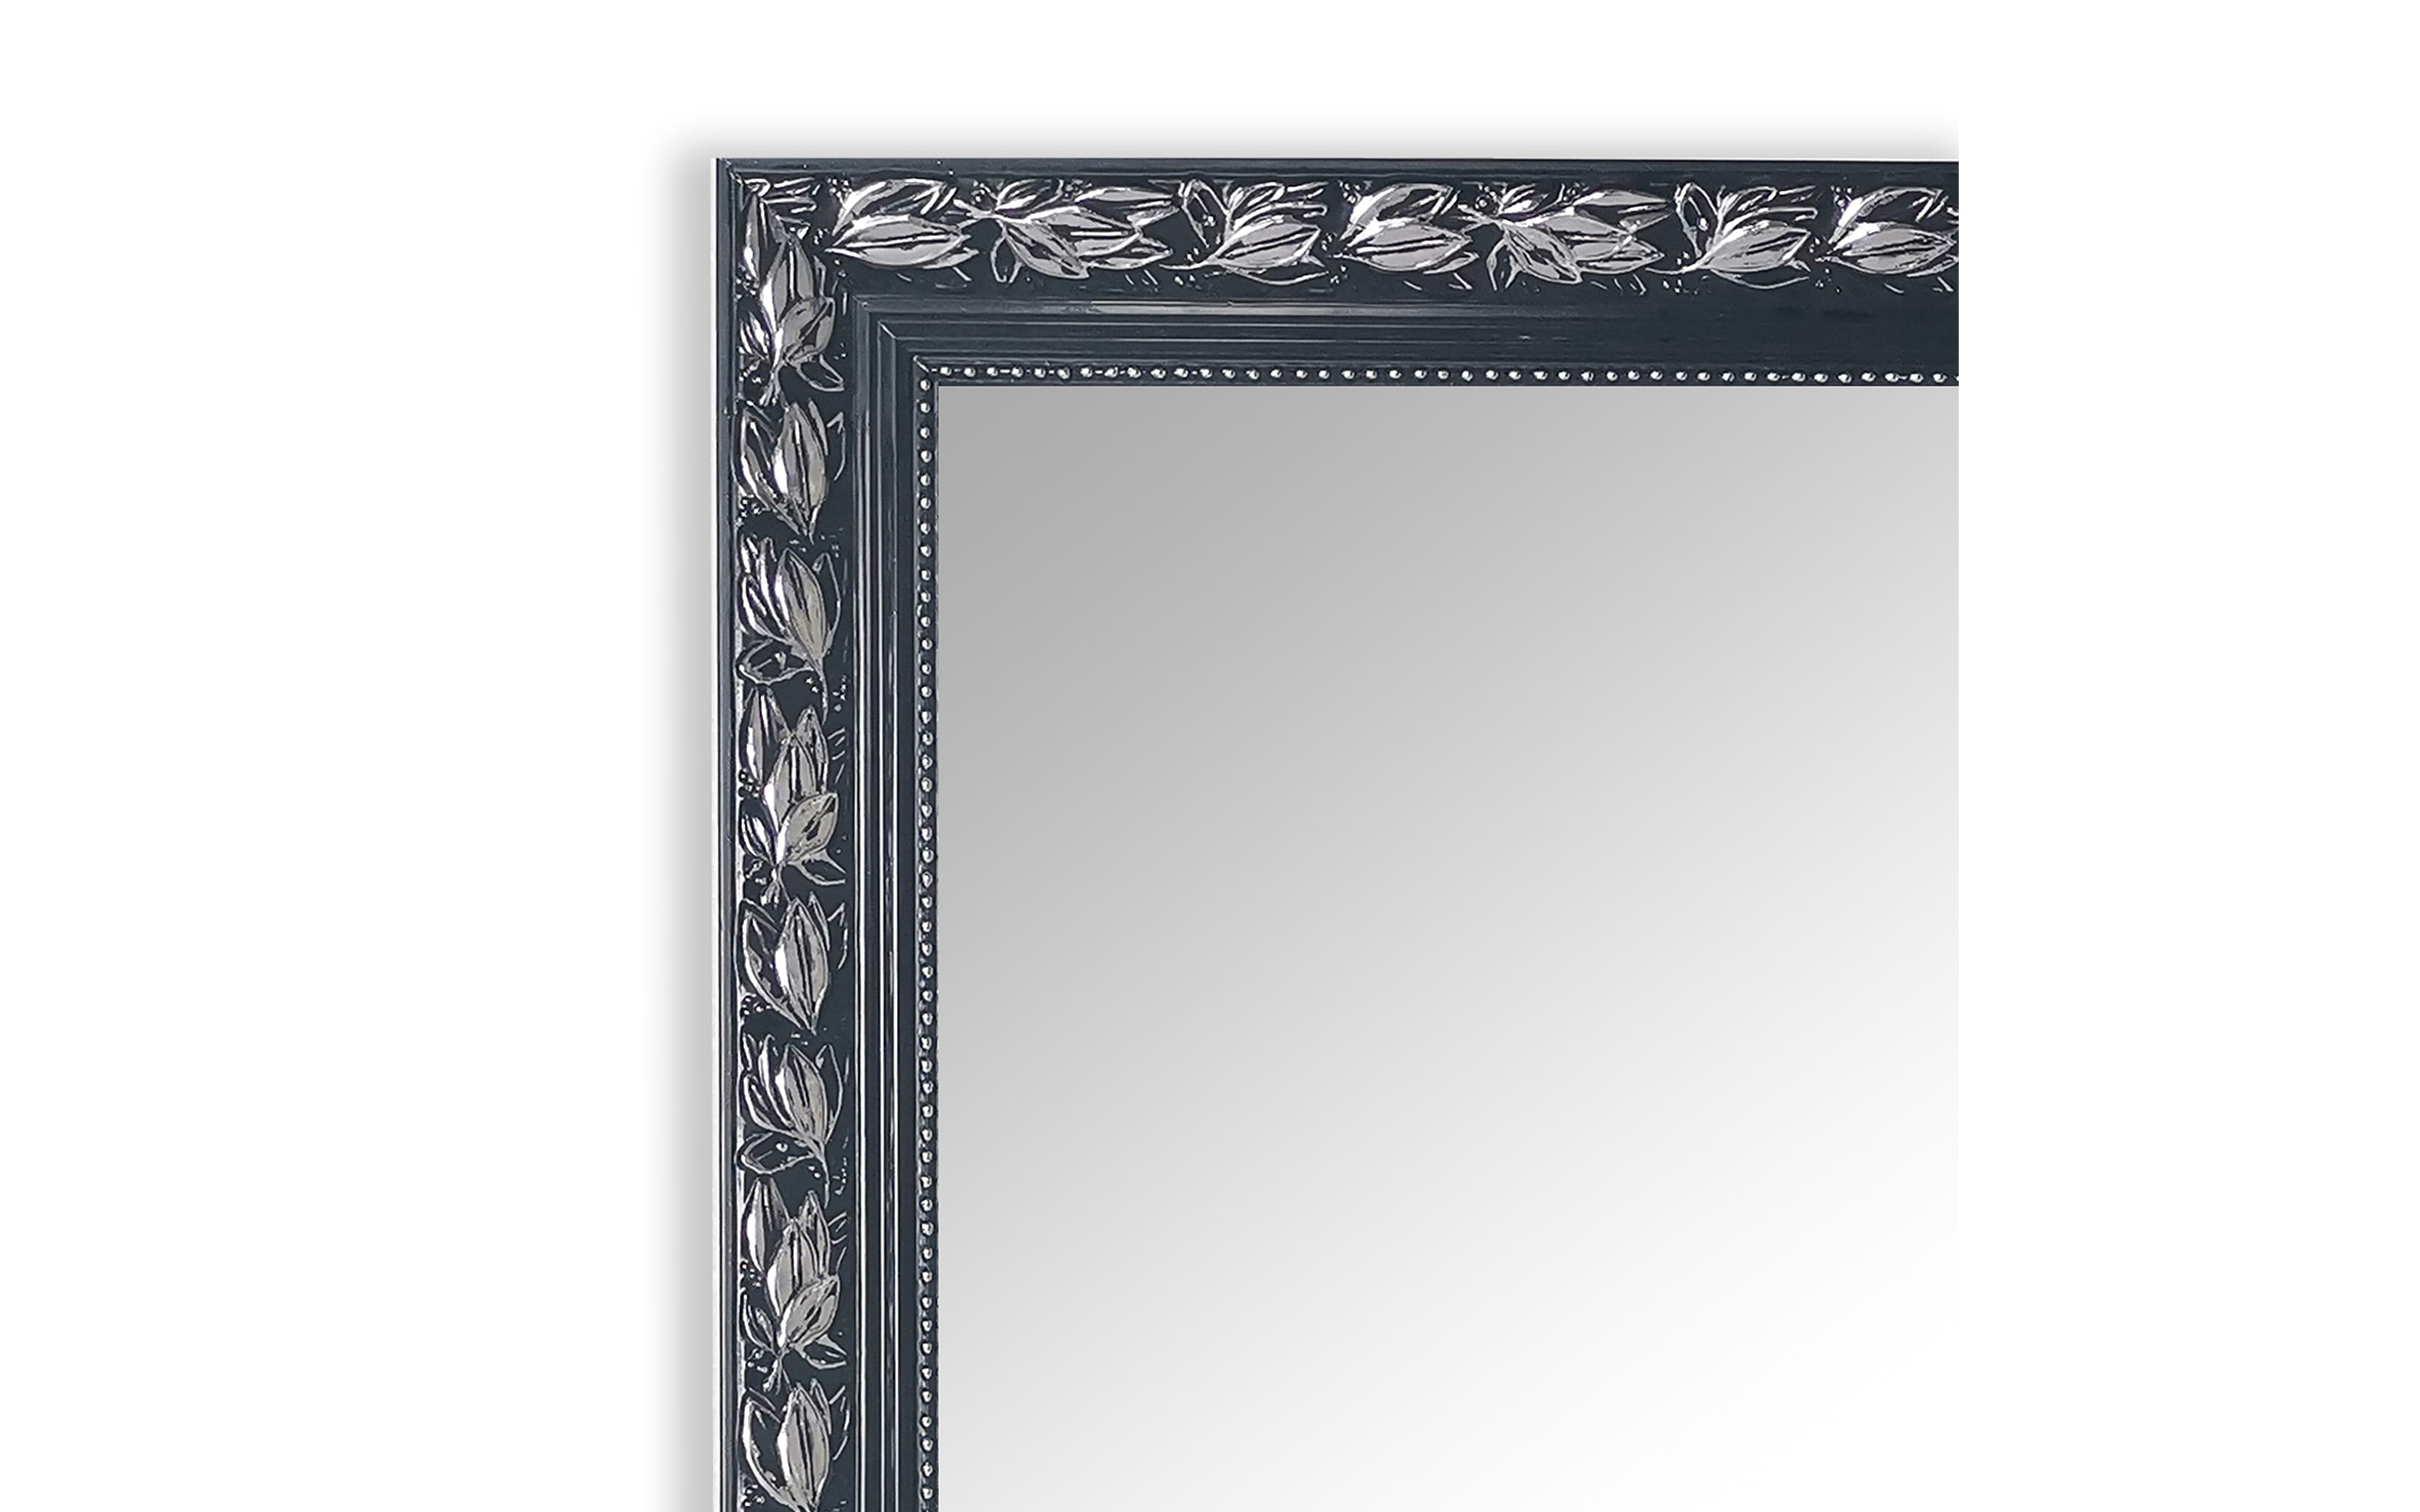 Rahmenspiegel Sonja, schwarz/silberfarbig, 55 x 70 cm